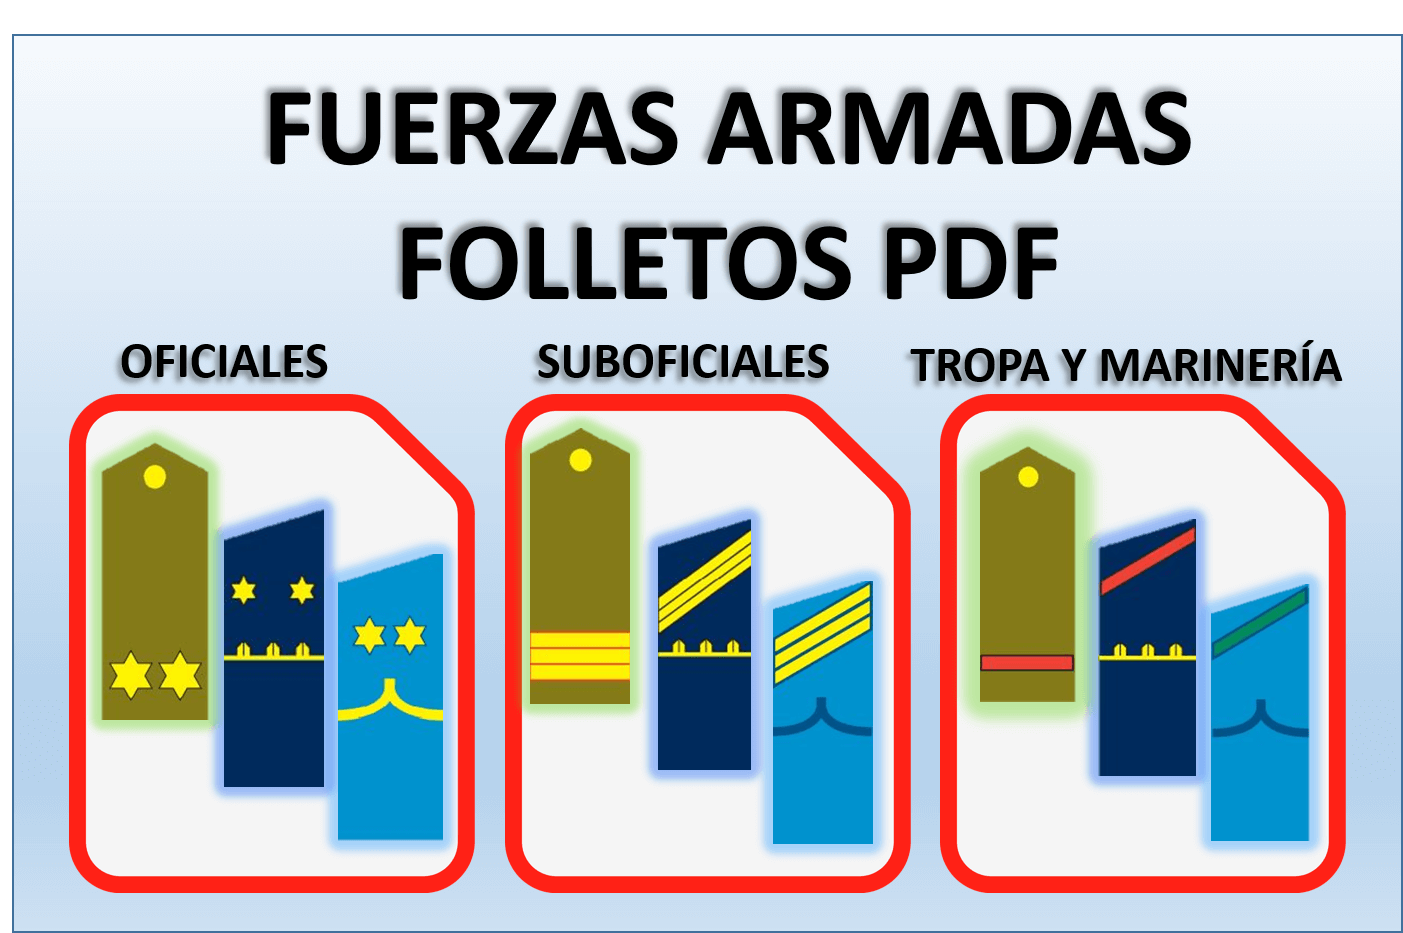 FFAA Folletos PDF